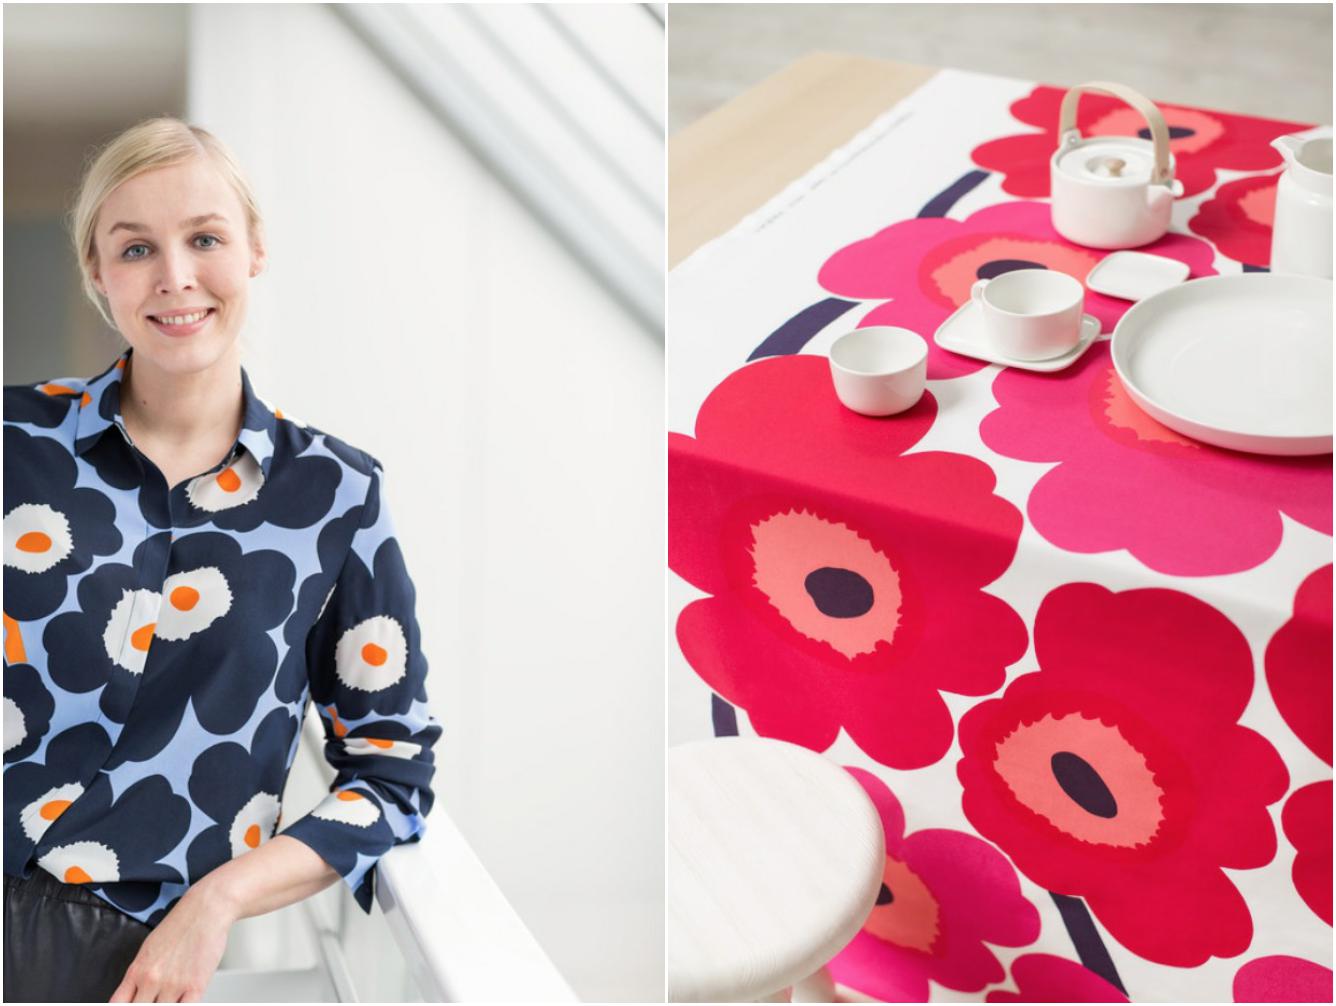 揭开北欧印花王国的面纱《华丽志》独家专访芬兰国宝级品牌 Marimekko 总裁Tiina Alahuhta-Kasko